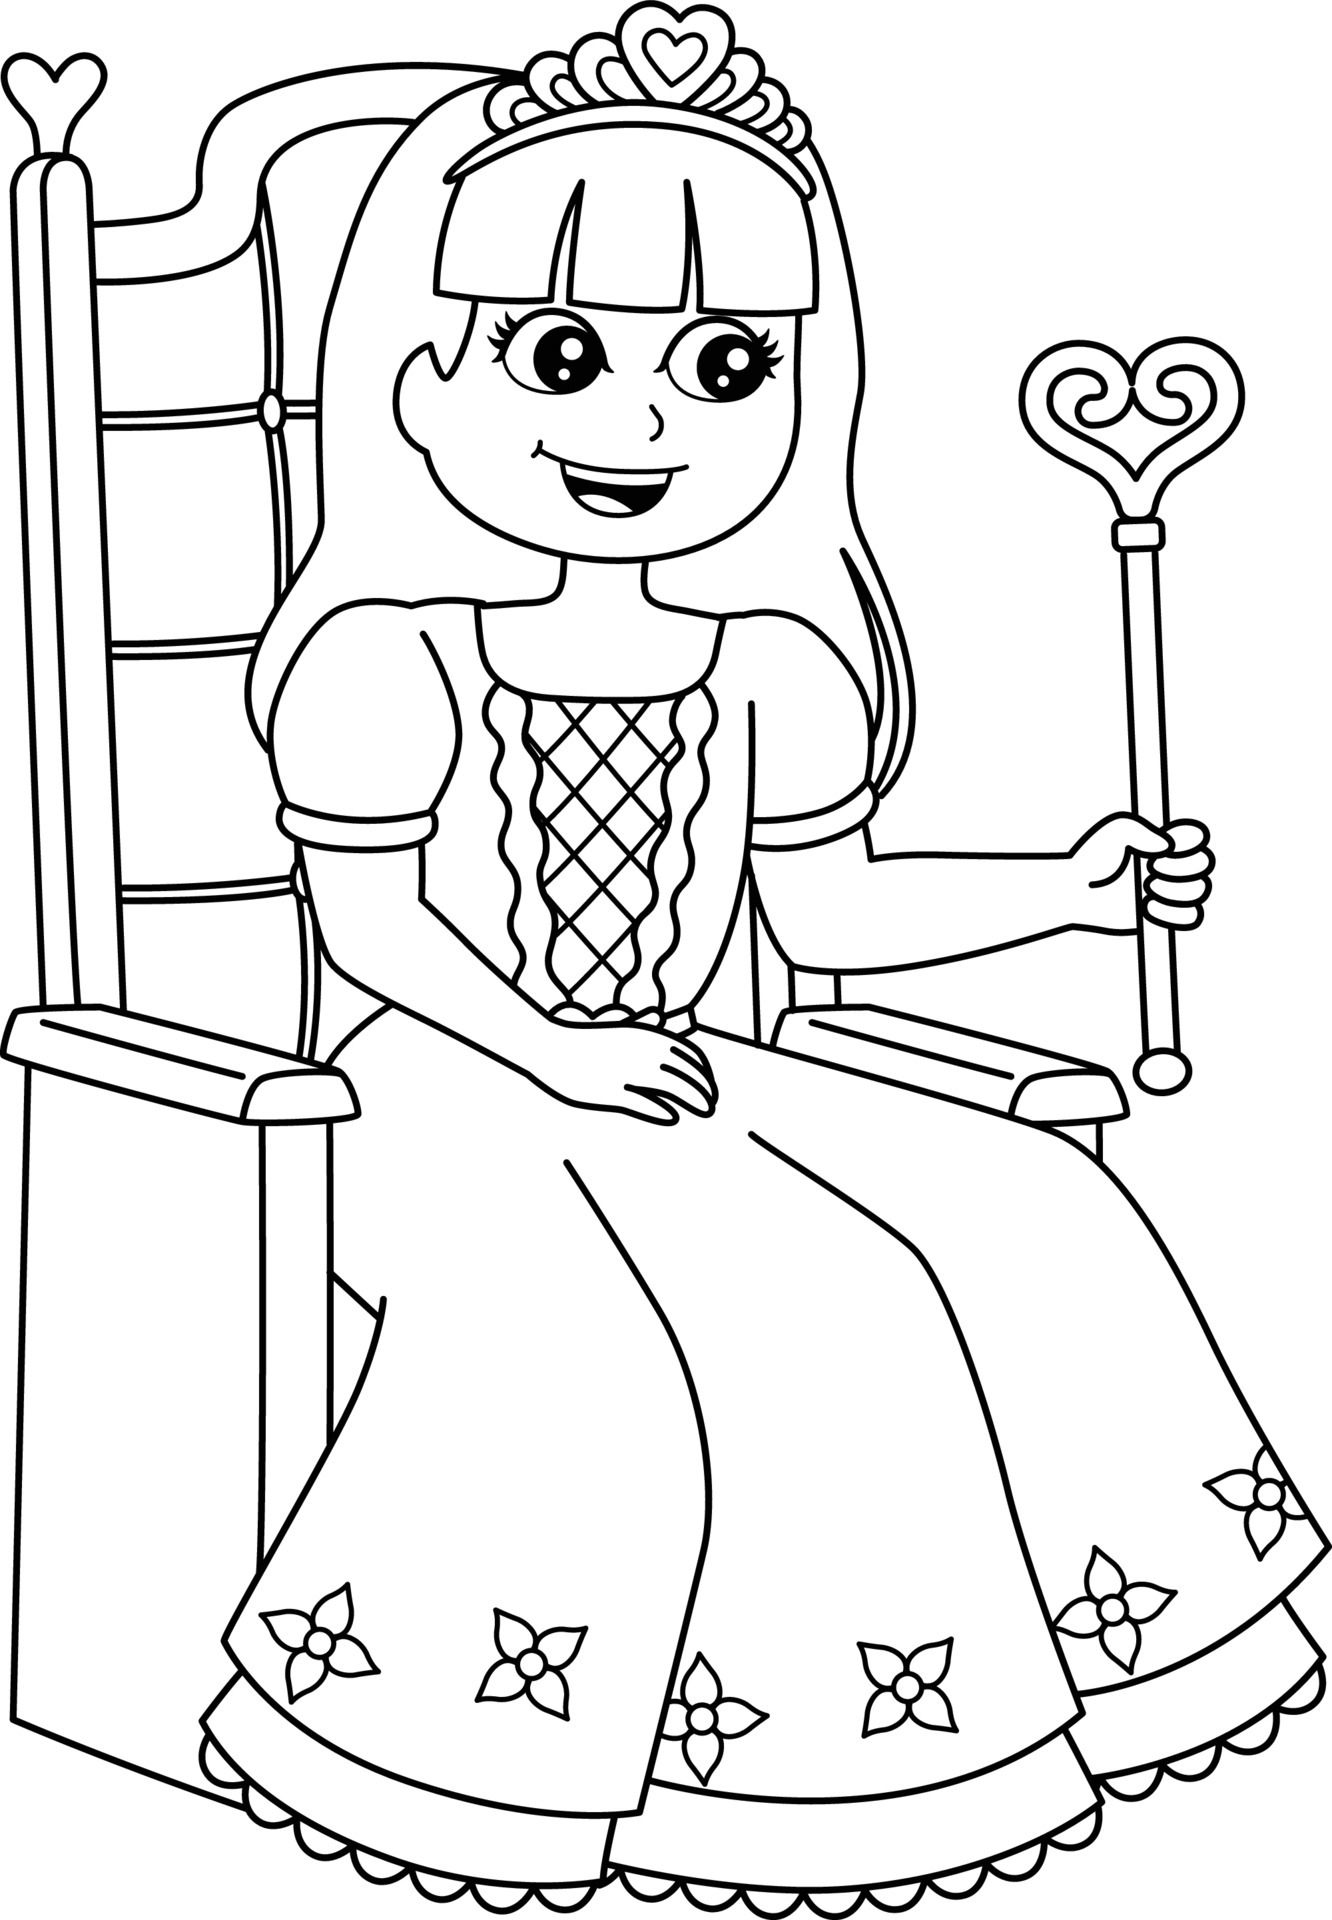 princesa sereia isolada para colorir para crianças 8209134 Vetor no Vecteezy